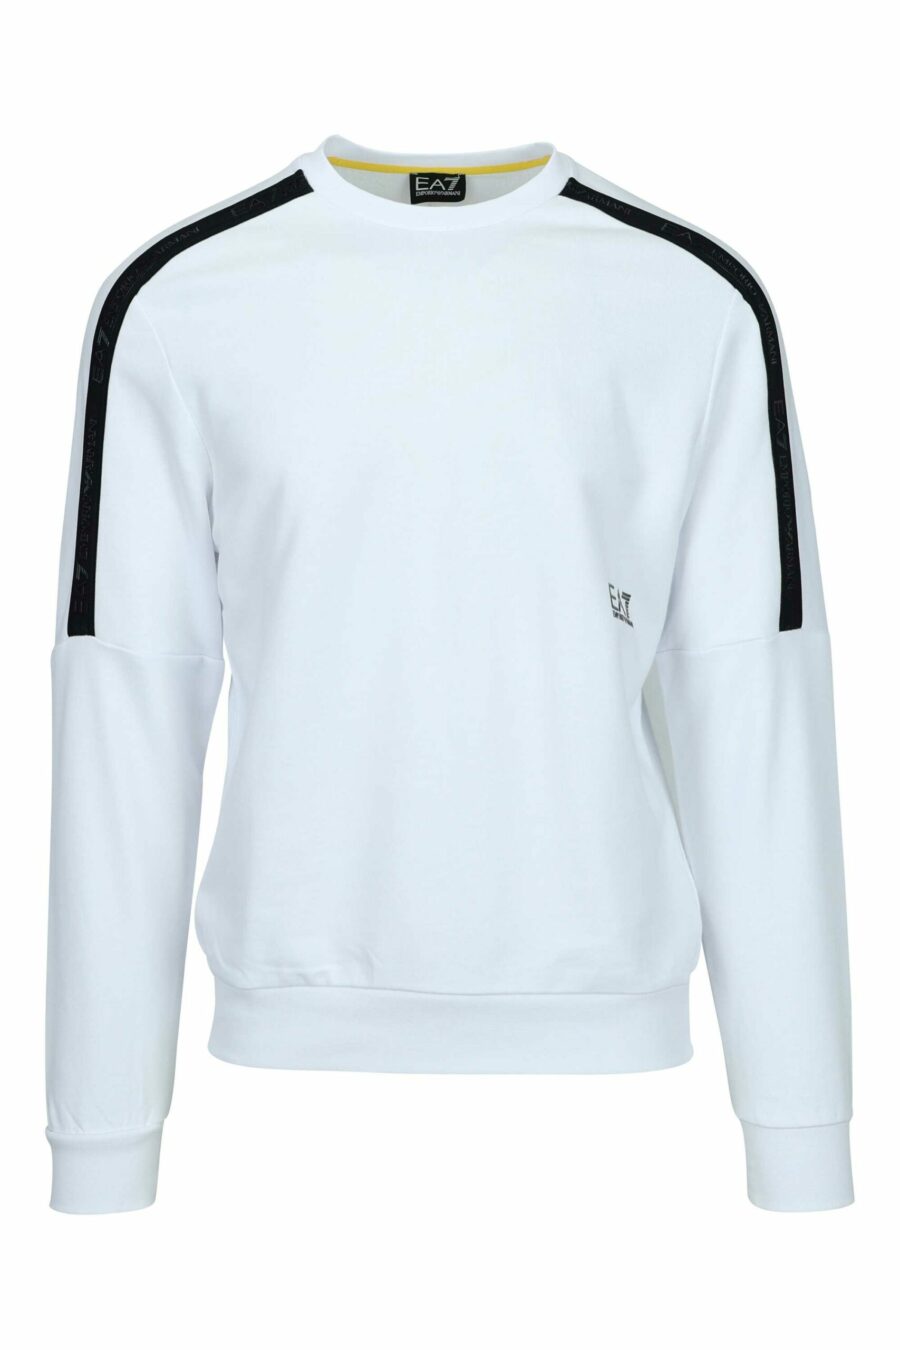 Weißes Sweatshirt mit "lux identity"-Mini-Logo auf einfarbigem Band - 8058947443338 skaliert